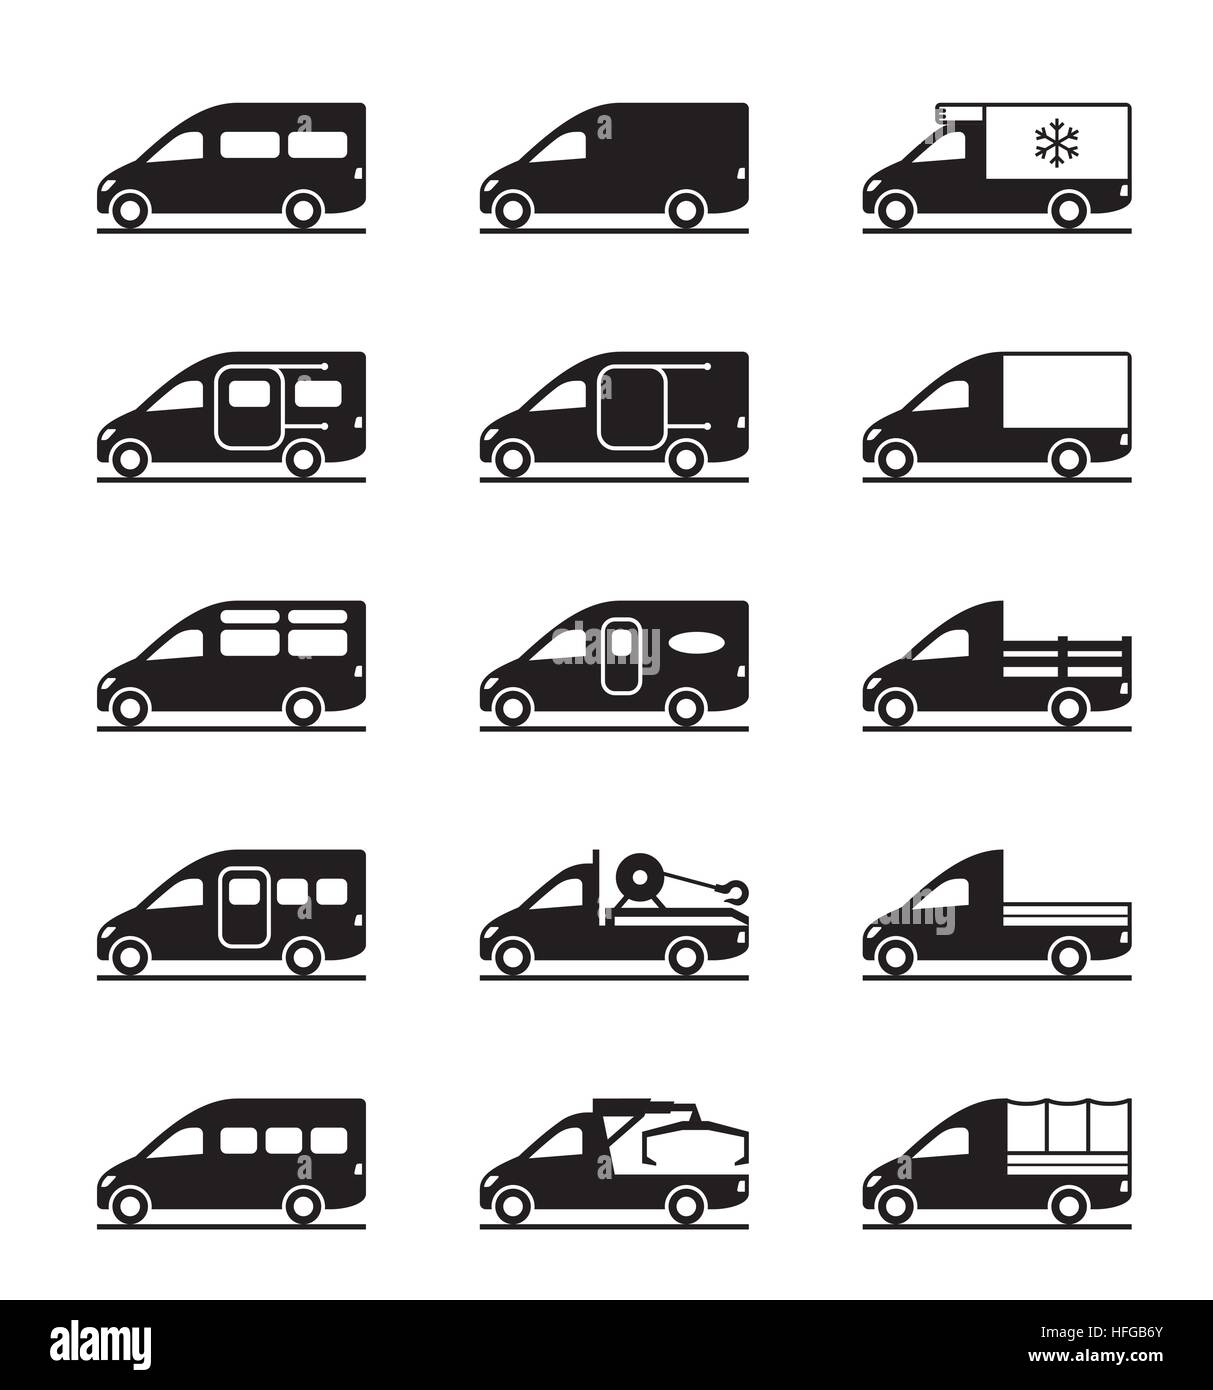 Verschiedene Arten von vans und Pickups - Vektor-illustration  Stock-Vektorgrafik - Alamy